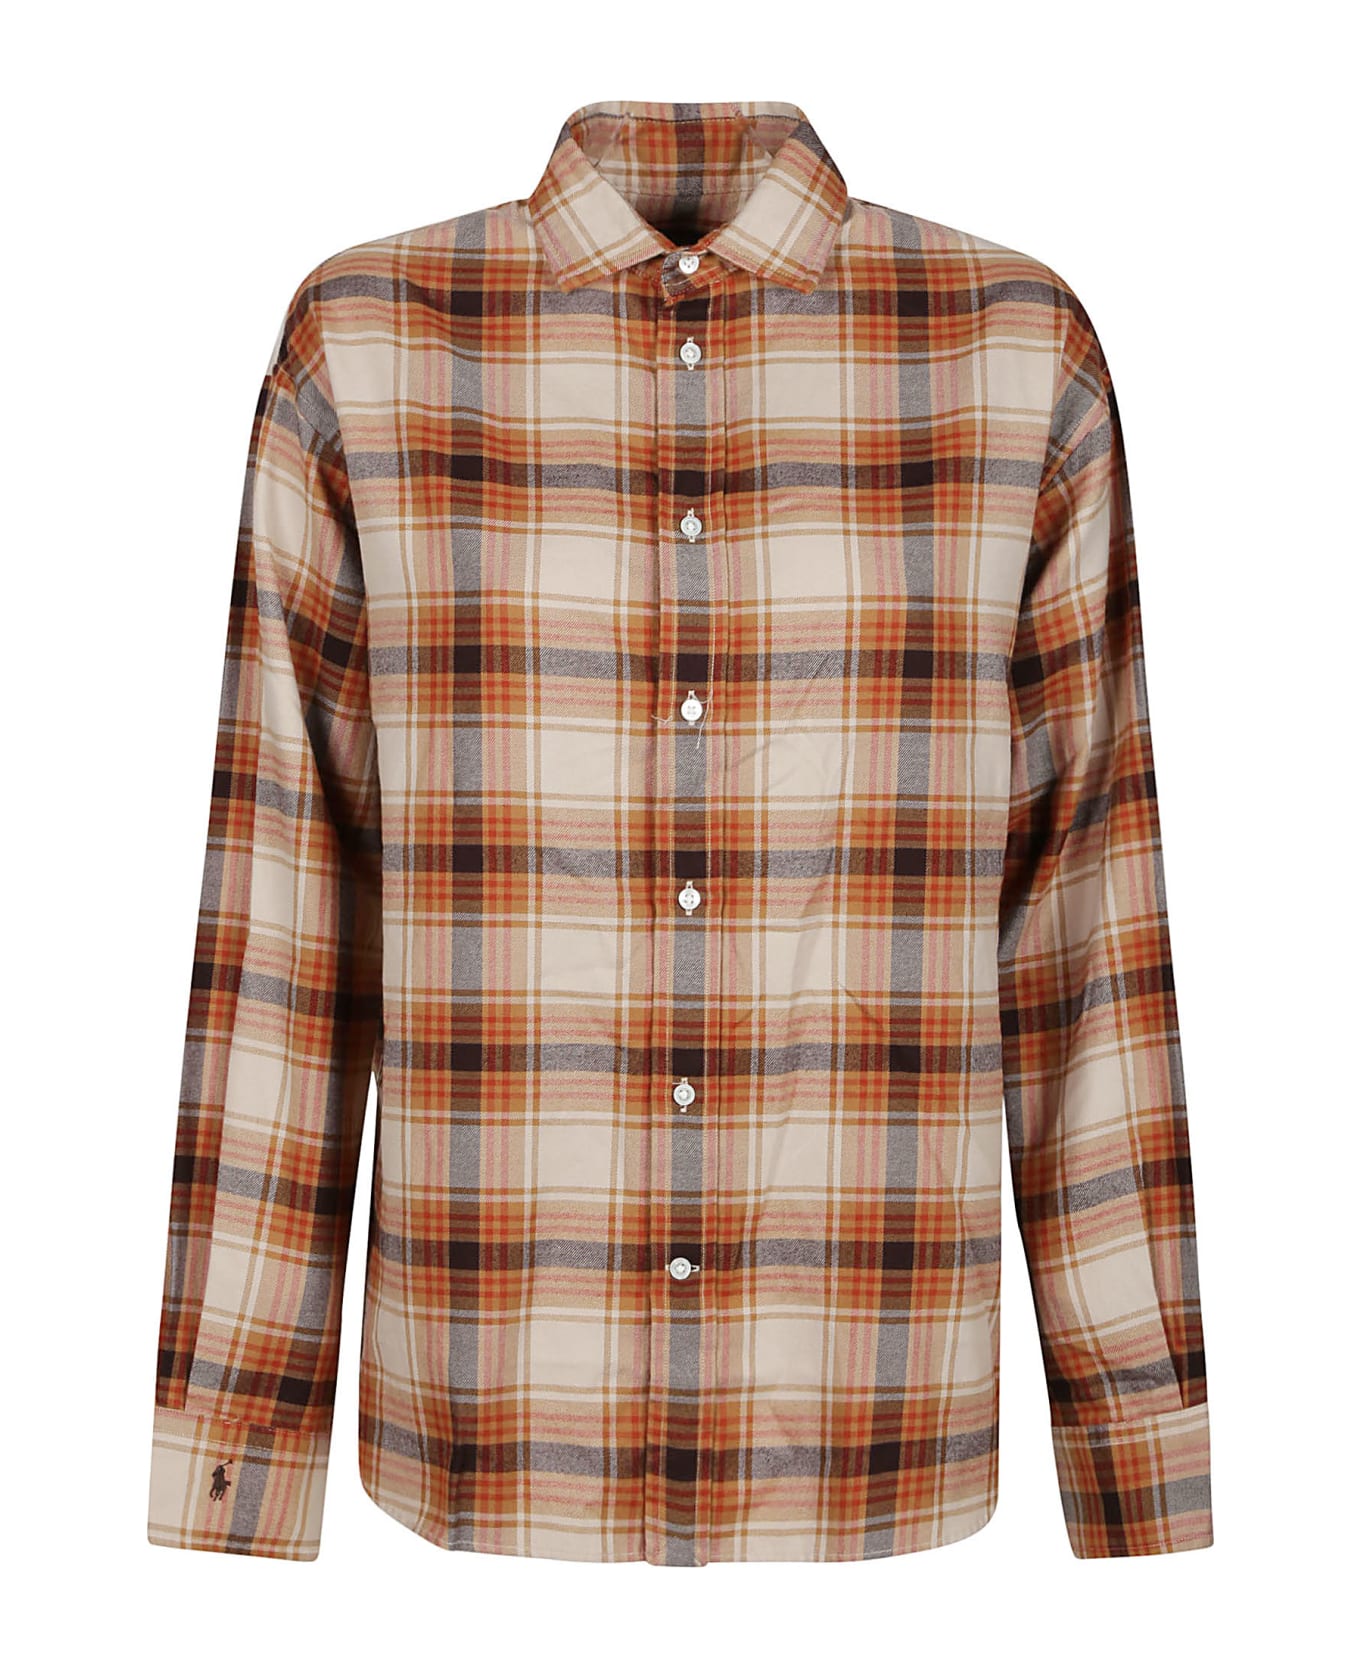 Ralph Lauren Long Sleeve Button Front Shirt - Tan Multi Plaid